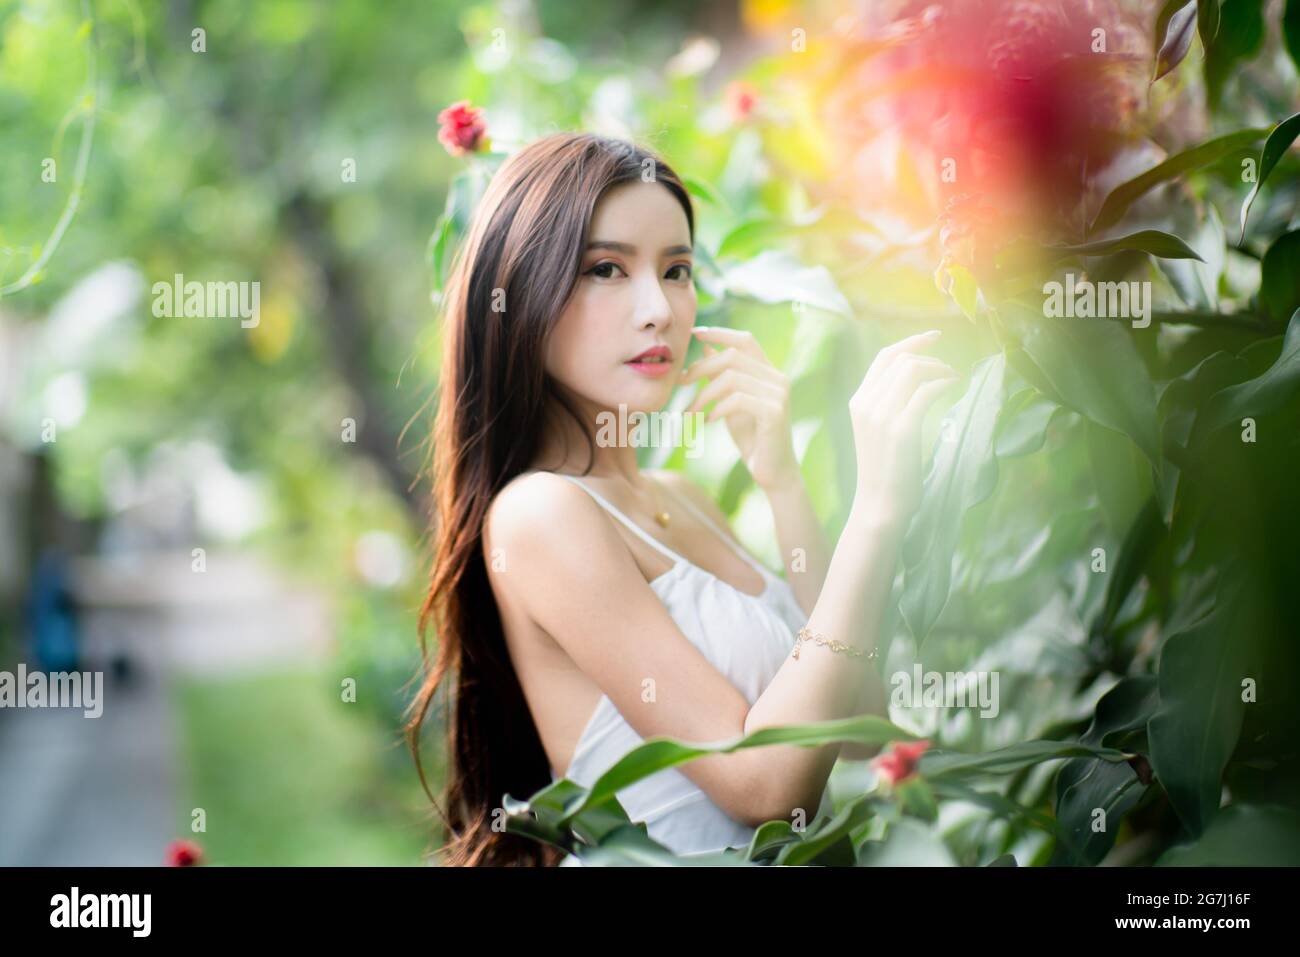 Una bella ragazza da sola in giardino con vestito bianco Foto Stock